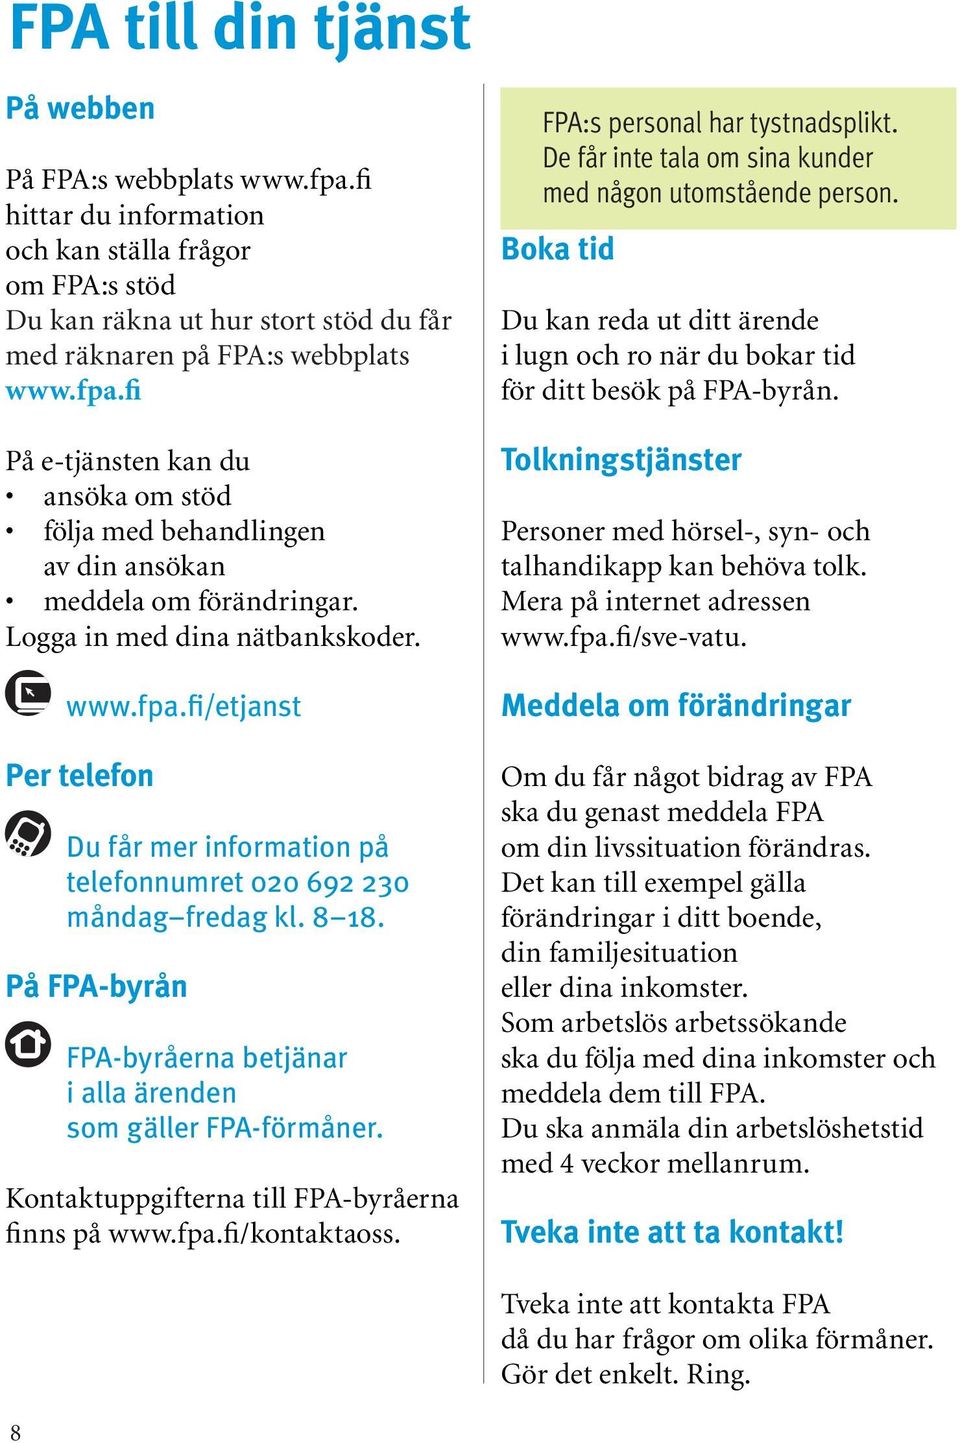 På FPA-byrån FPA-byråerna betjänar i alla ärenden som gäller FPA-förmåner. Kontaktuppgifterna till FPA-byråerna finns på www.fpa.fi/kontaktaoss. FPA:s personal har tystnadsplikt.